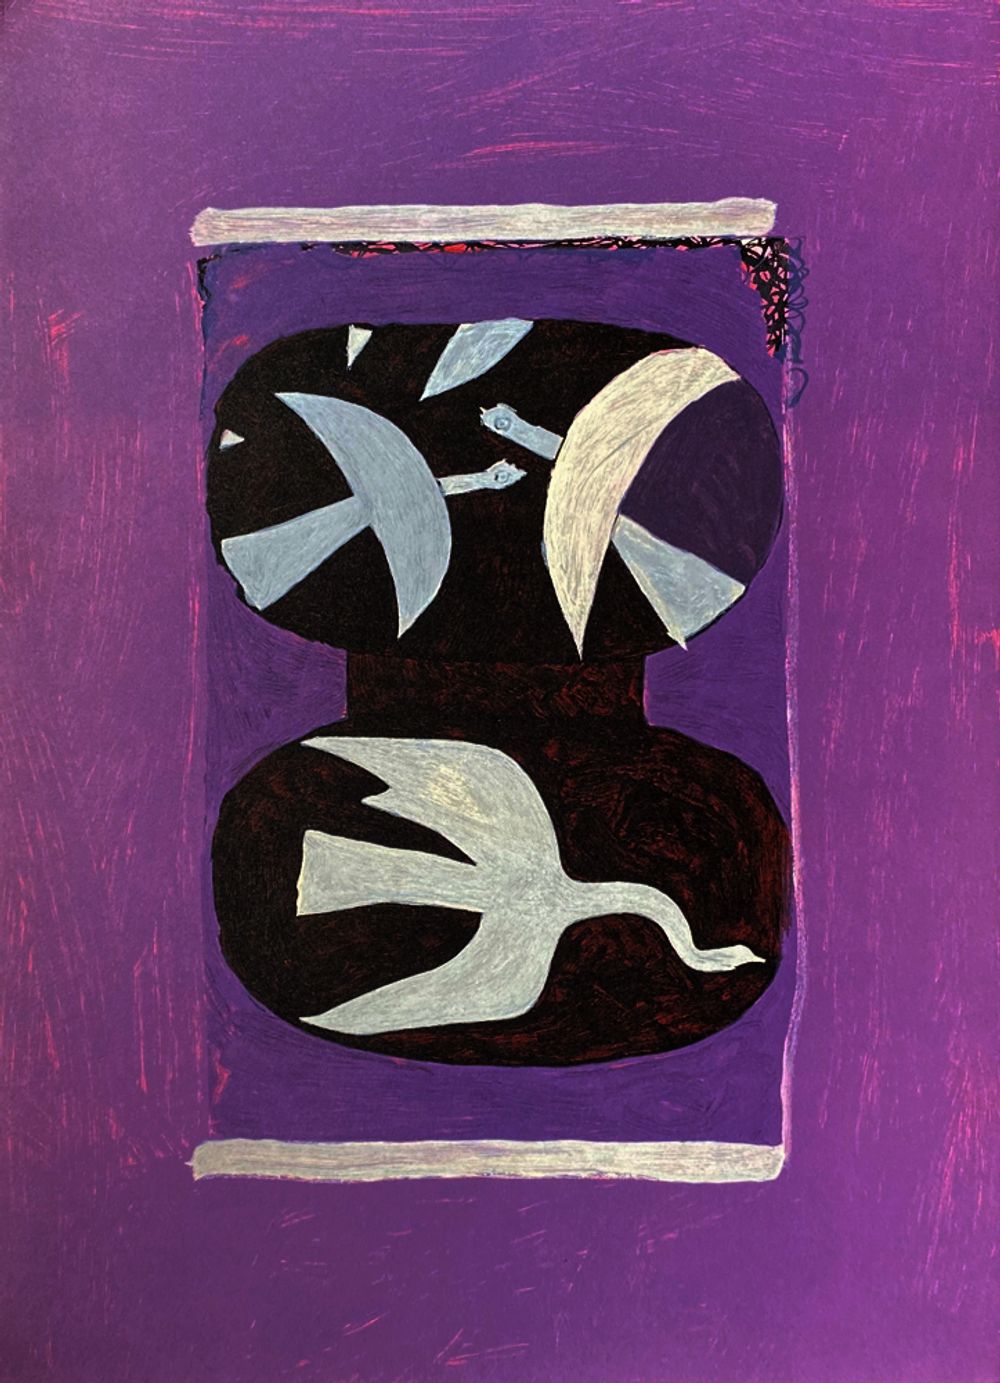 DLM144 - Trois oiseaux sur fond violet